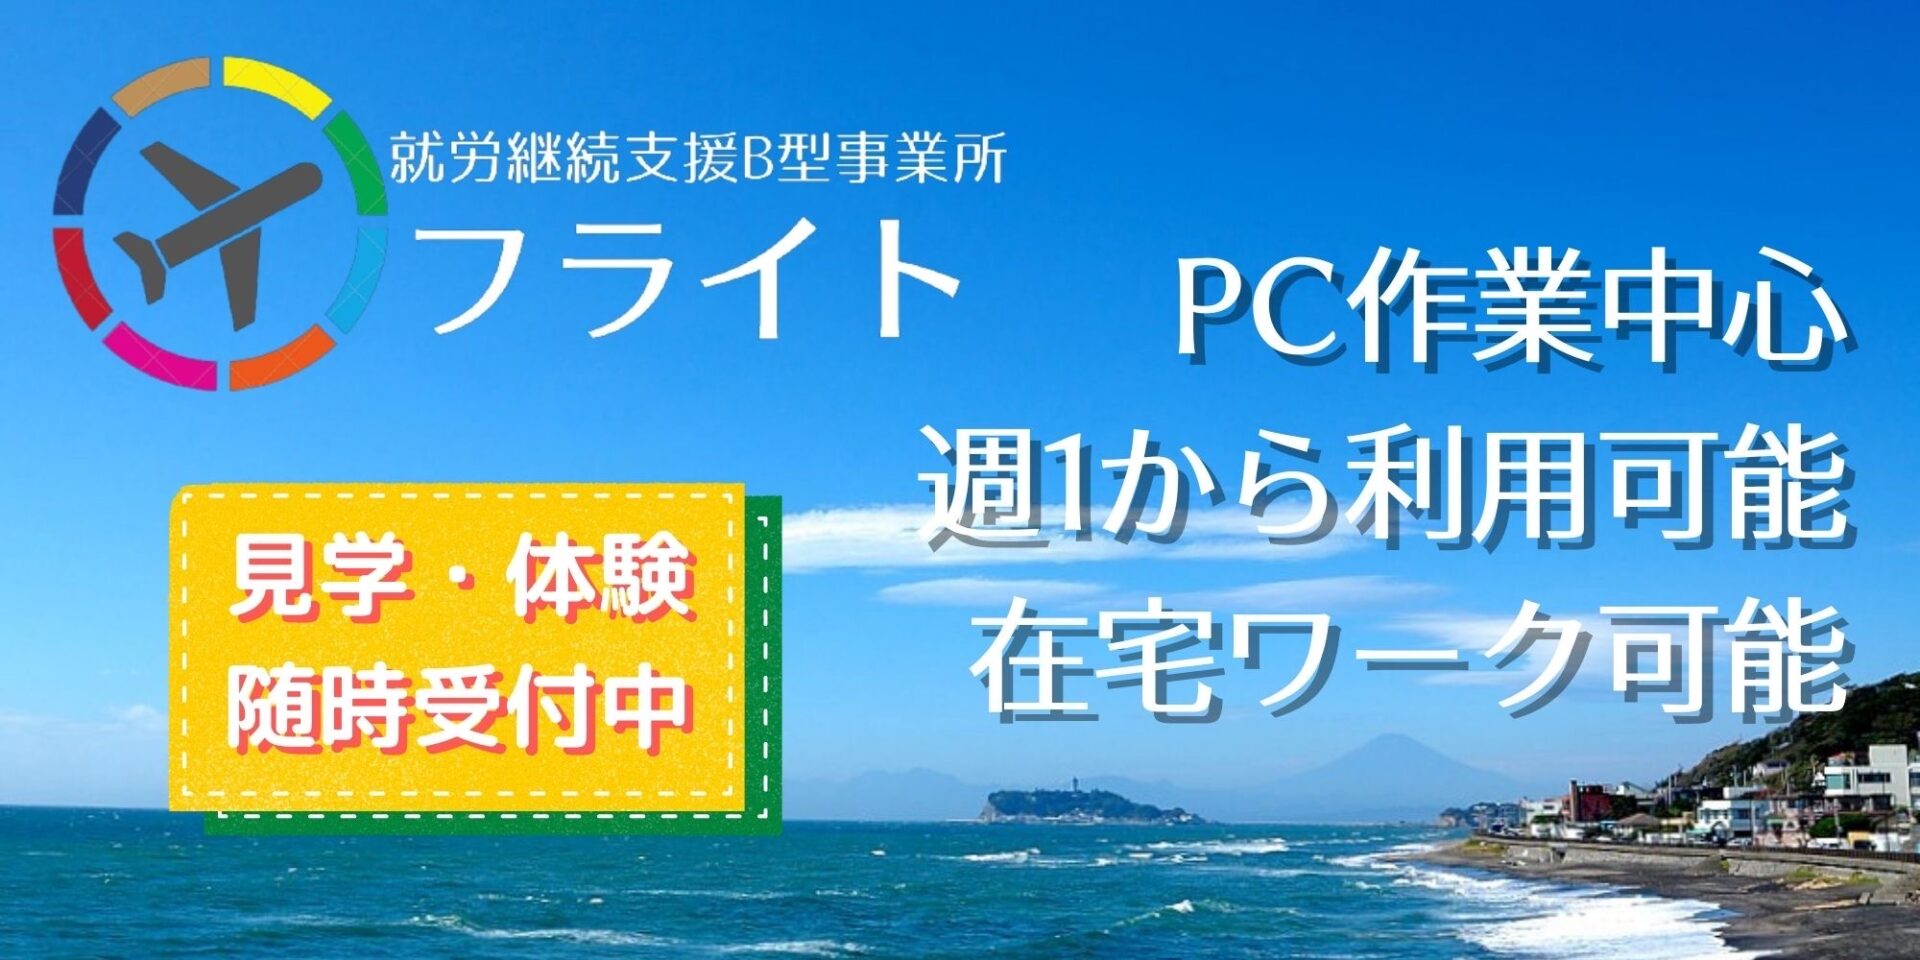 就労継続支援B型事業所フライトのトップページ。湘南の海の背景に「PC作業中心」、「週１から利用可能」、「在宅ワーク可能」と書かれている。